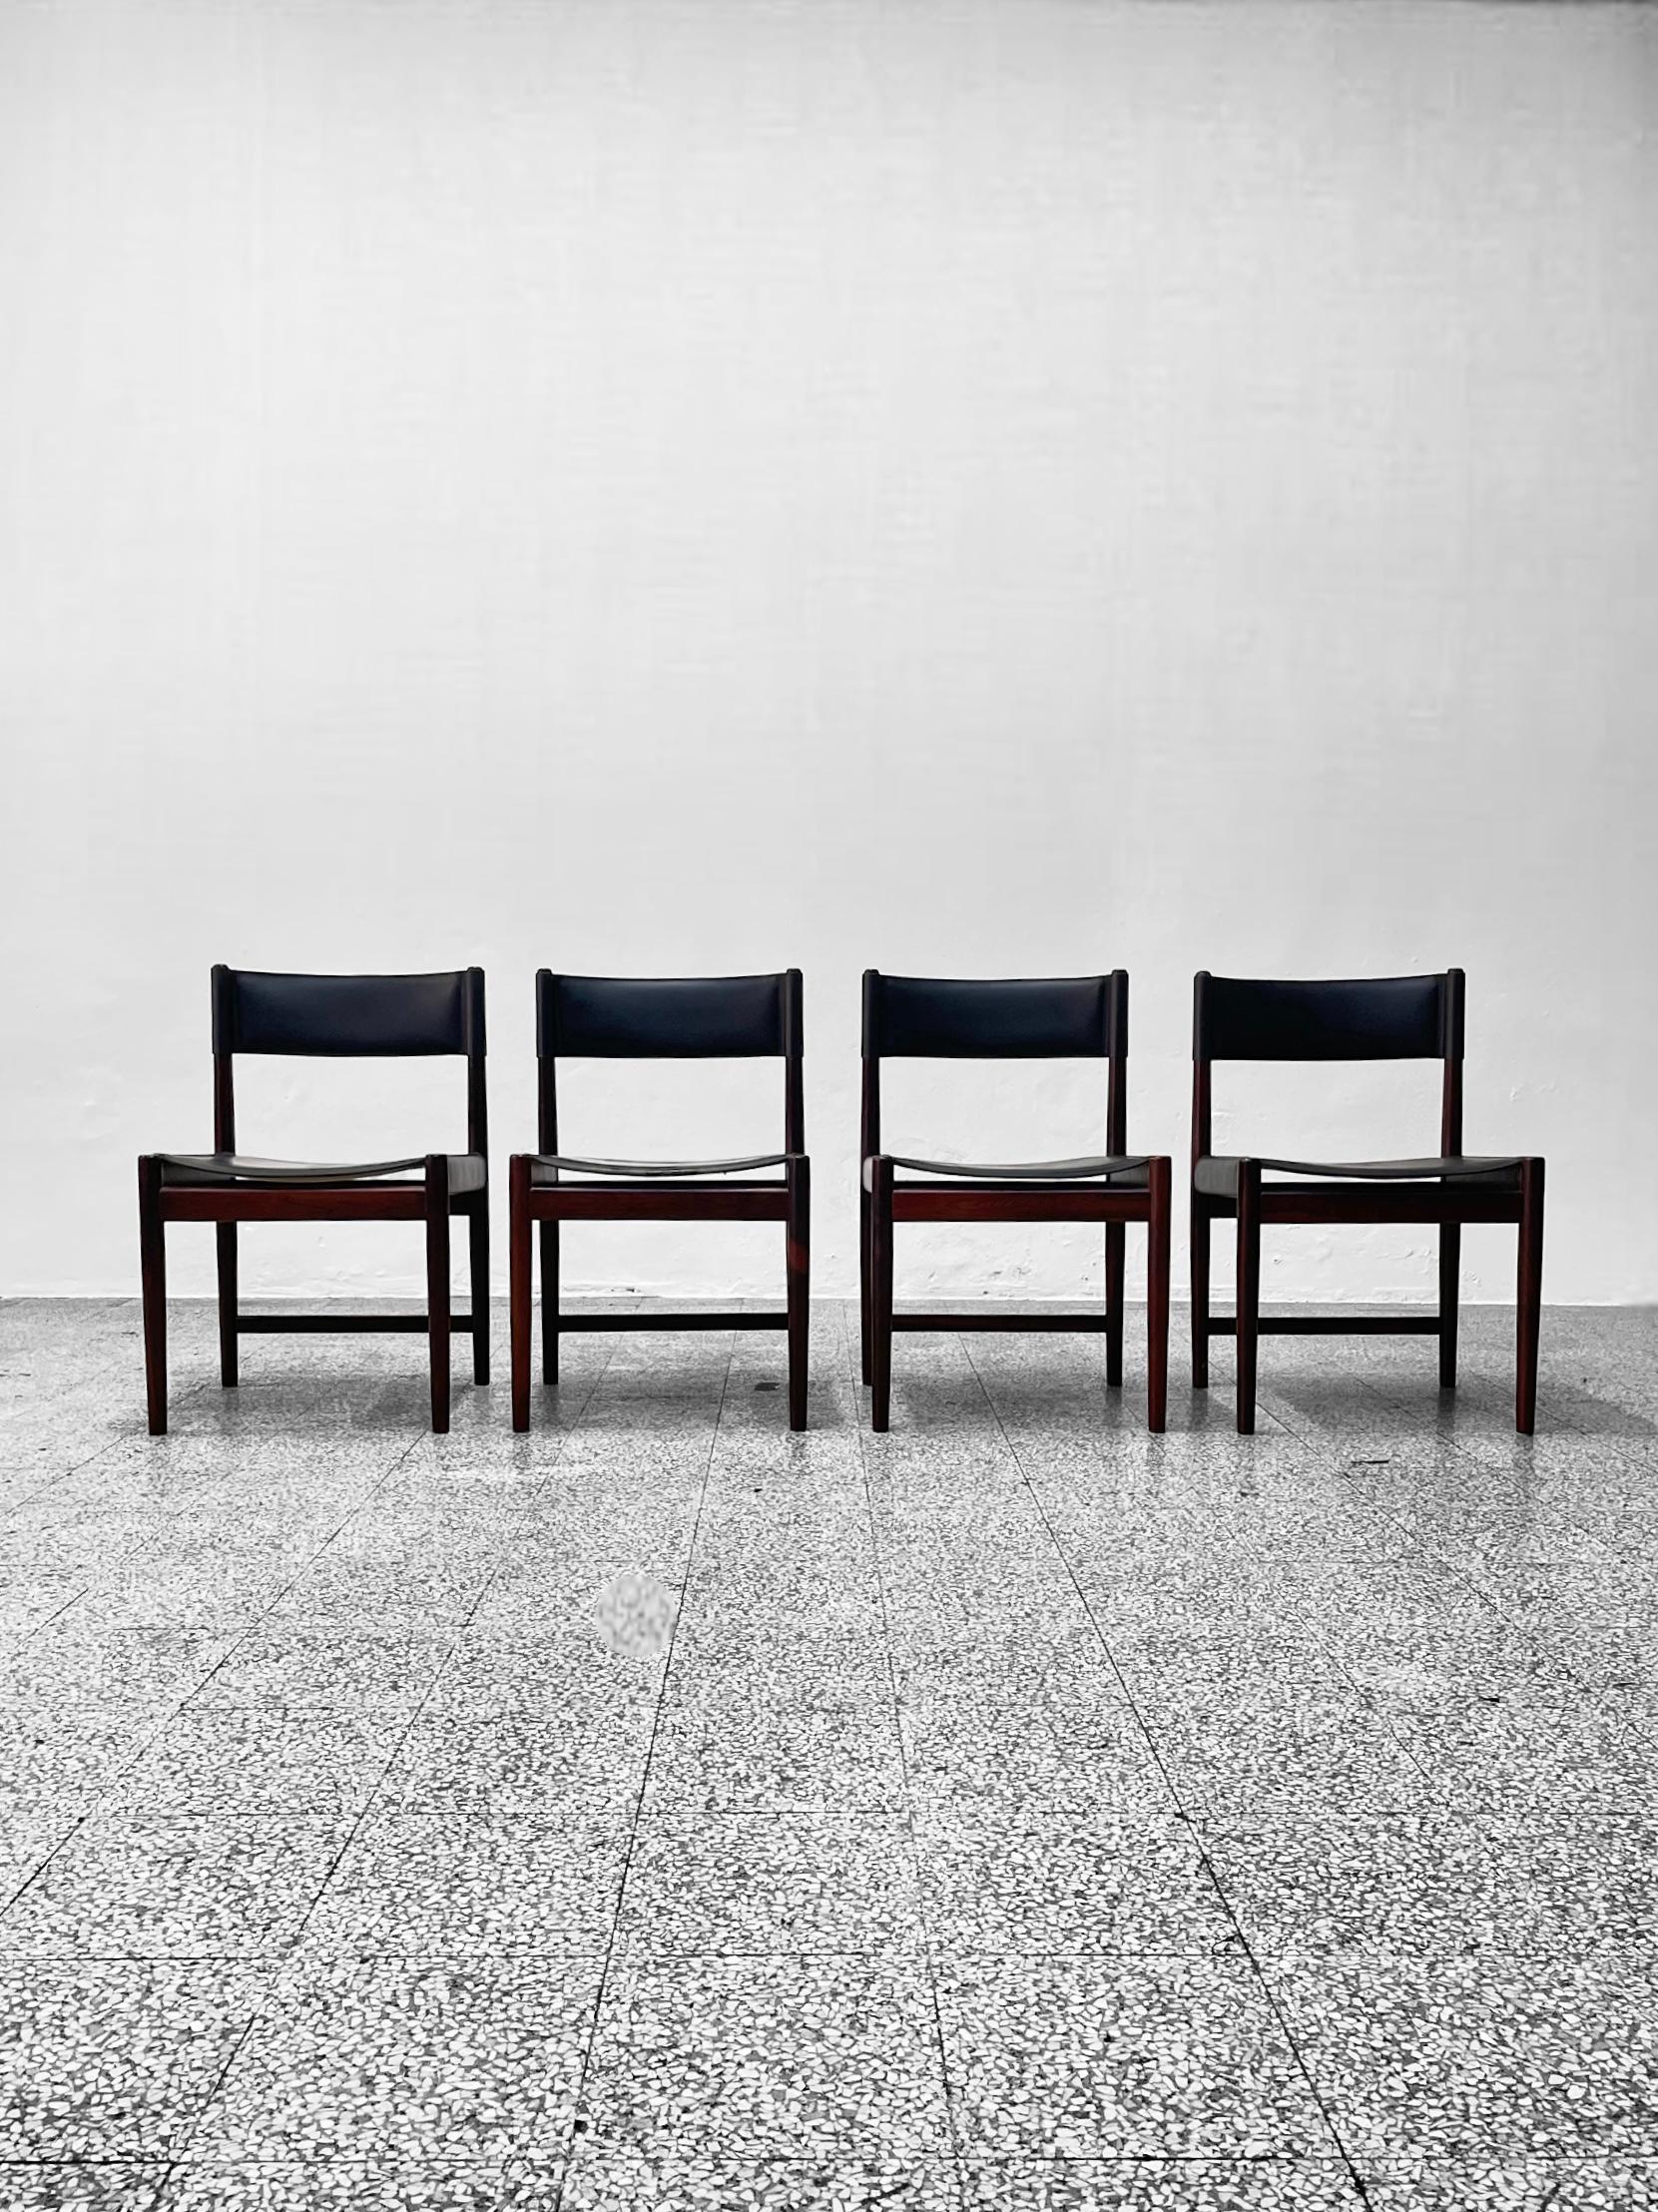 Ensemble de quatre chaises de salle à manger conçues par Kurt Østervig pour Sibast, années 1960.

Ces superbes chaises de salle à manger de Kurt Østervig sont la quintessence du design danois. Fabriquées avec la plus grande attention aux détails